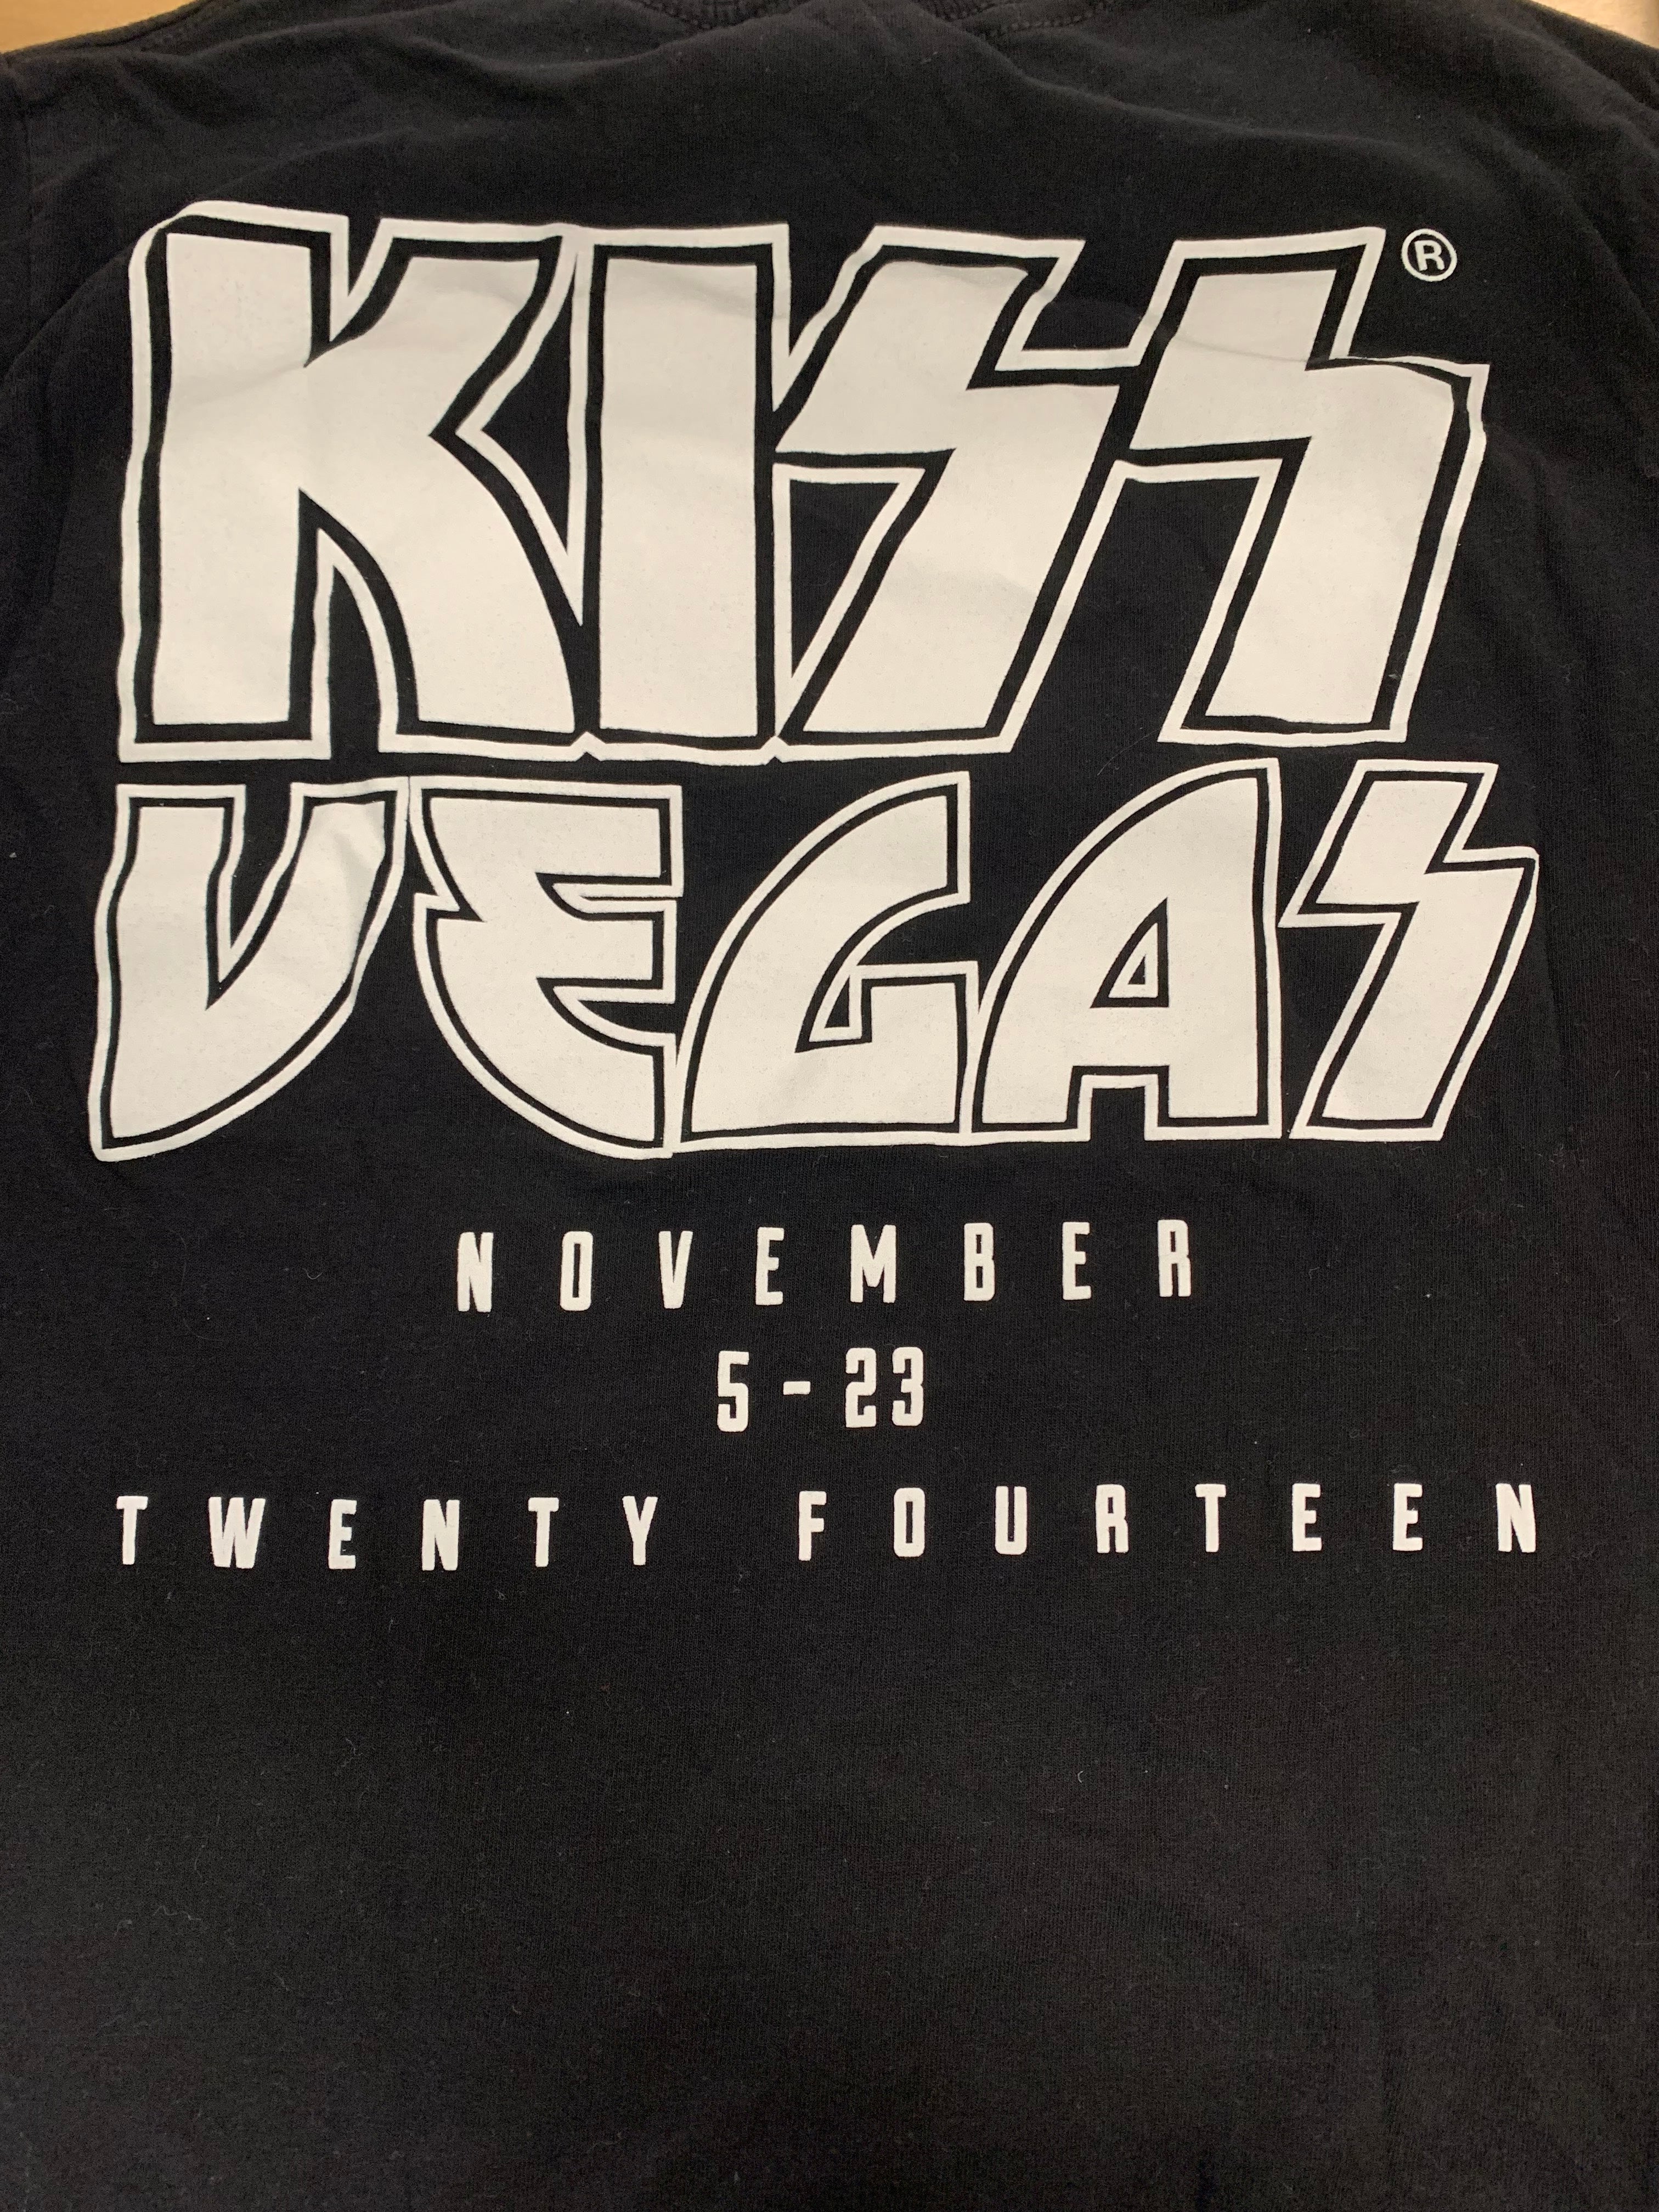 Kiss Rock Vegas 2014 T-Shirt, Black, S